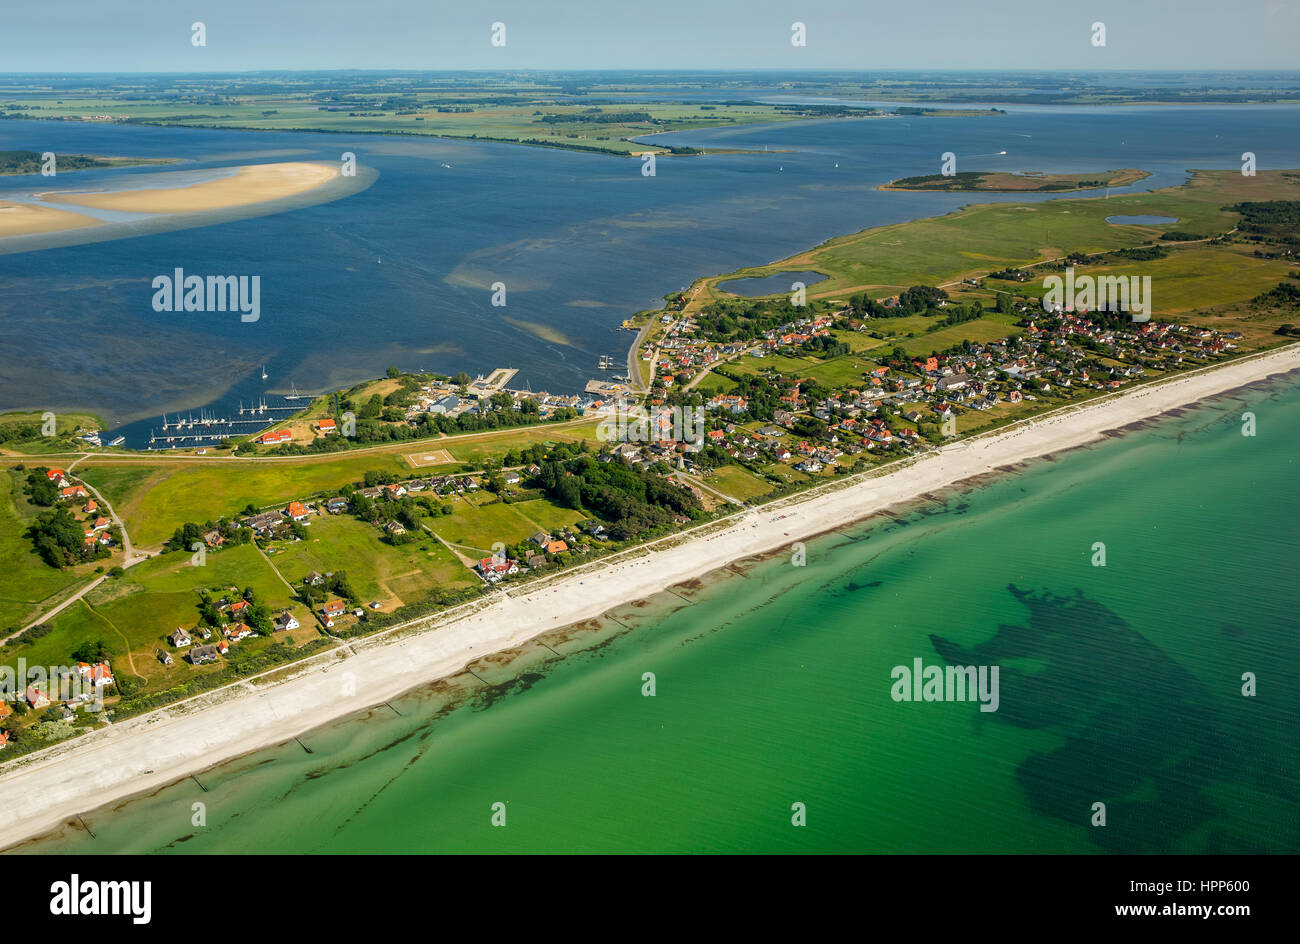 Sandy Beach, Bucht und Hafen von Vitte, Insel Hiddensee, Ostsee, Mecklenburg-Western Pomerania, Deutschland Stockfoto